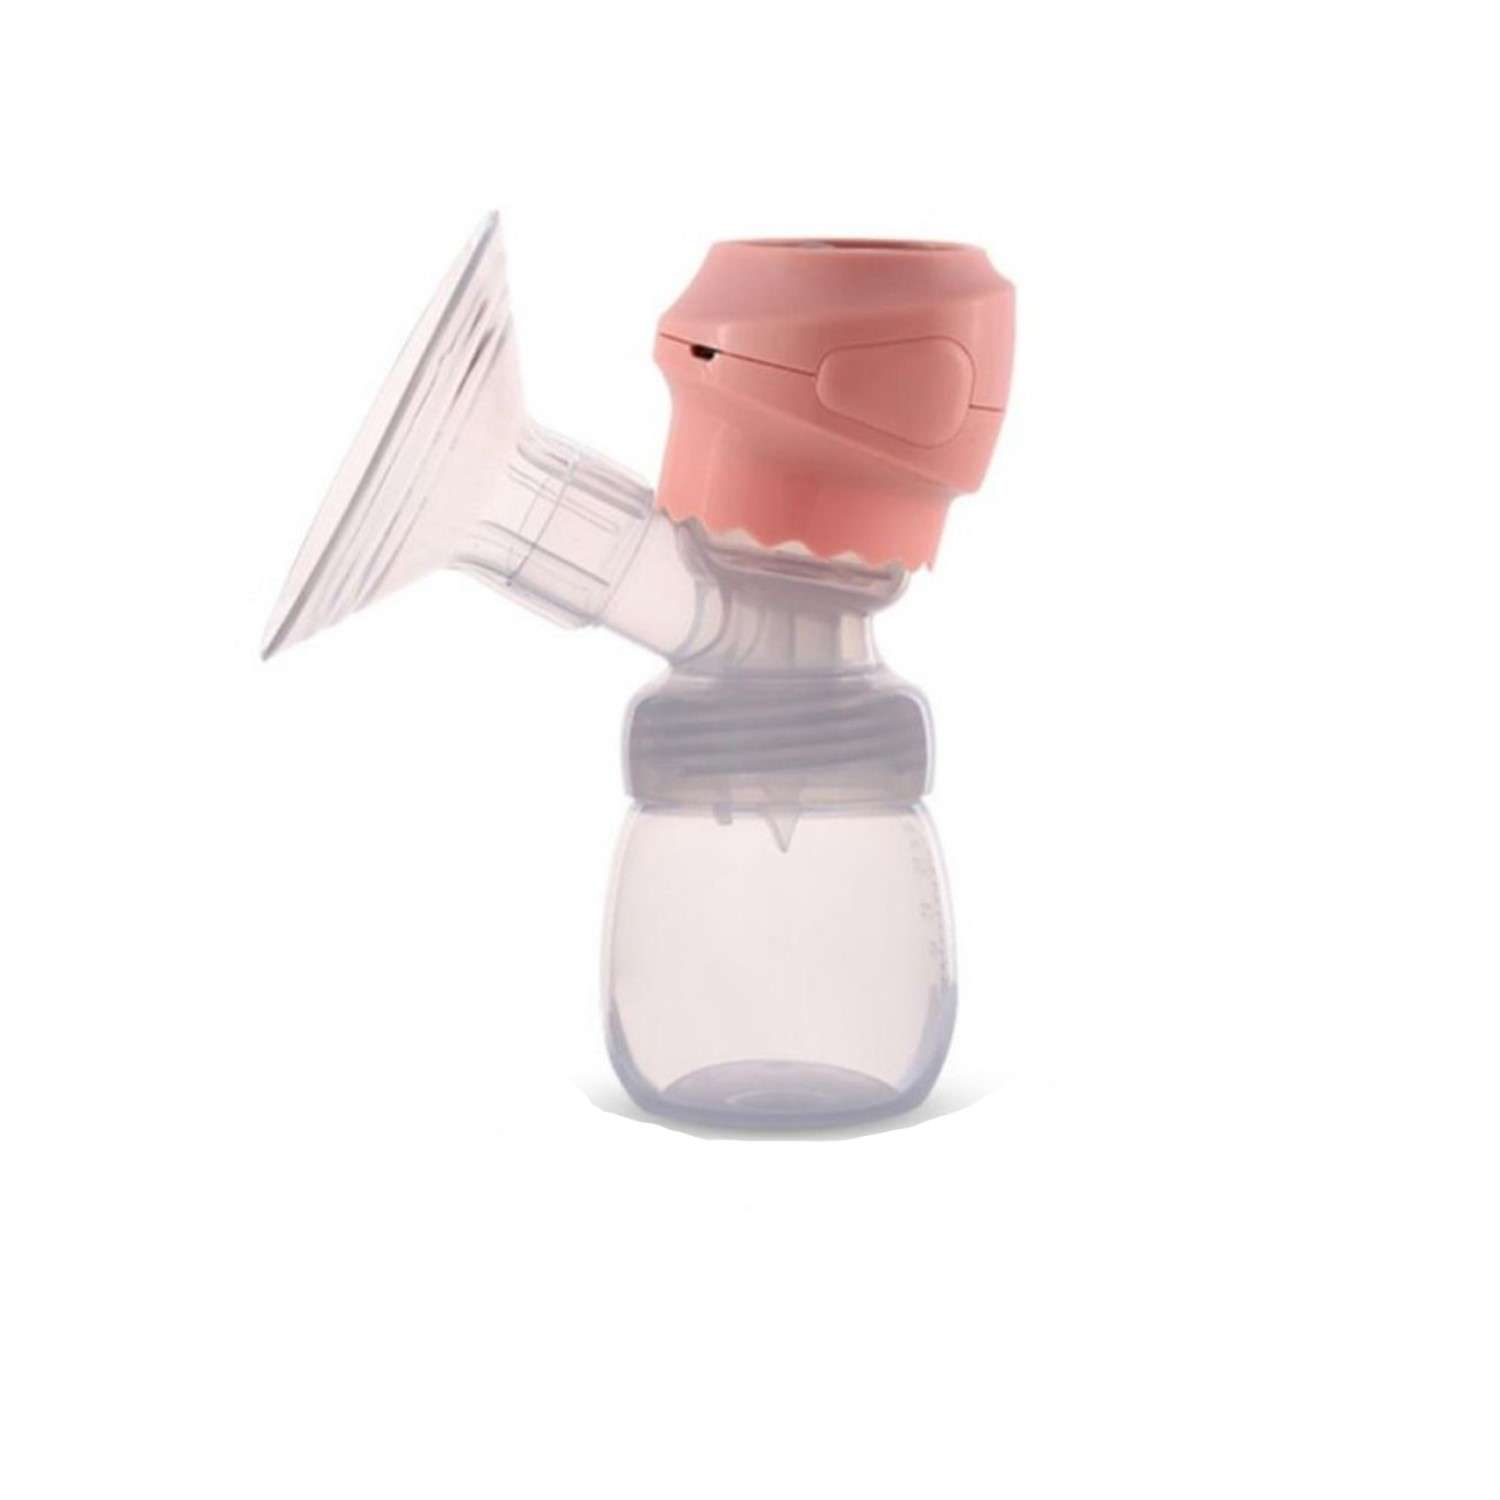 Электронный молокоотсос Rabizy для сцеживания молока розовый - фото 1